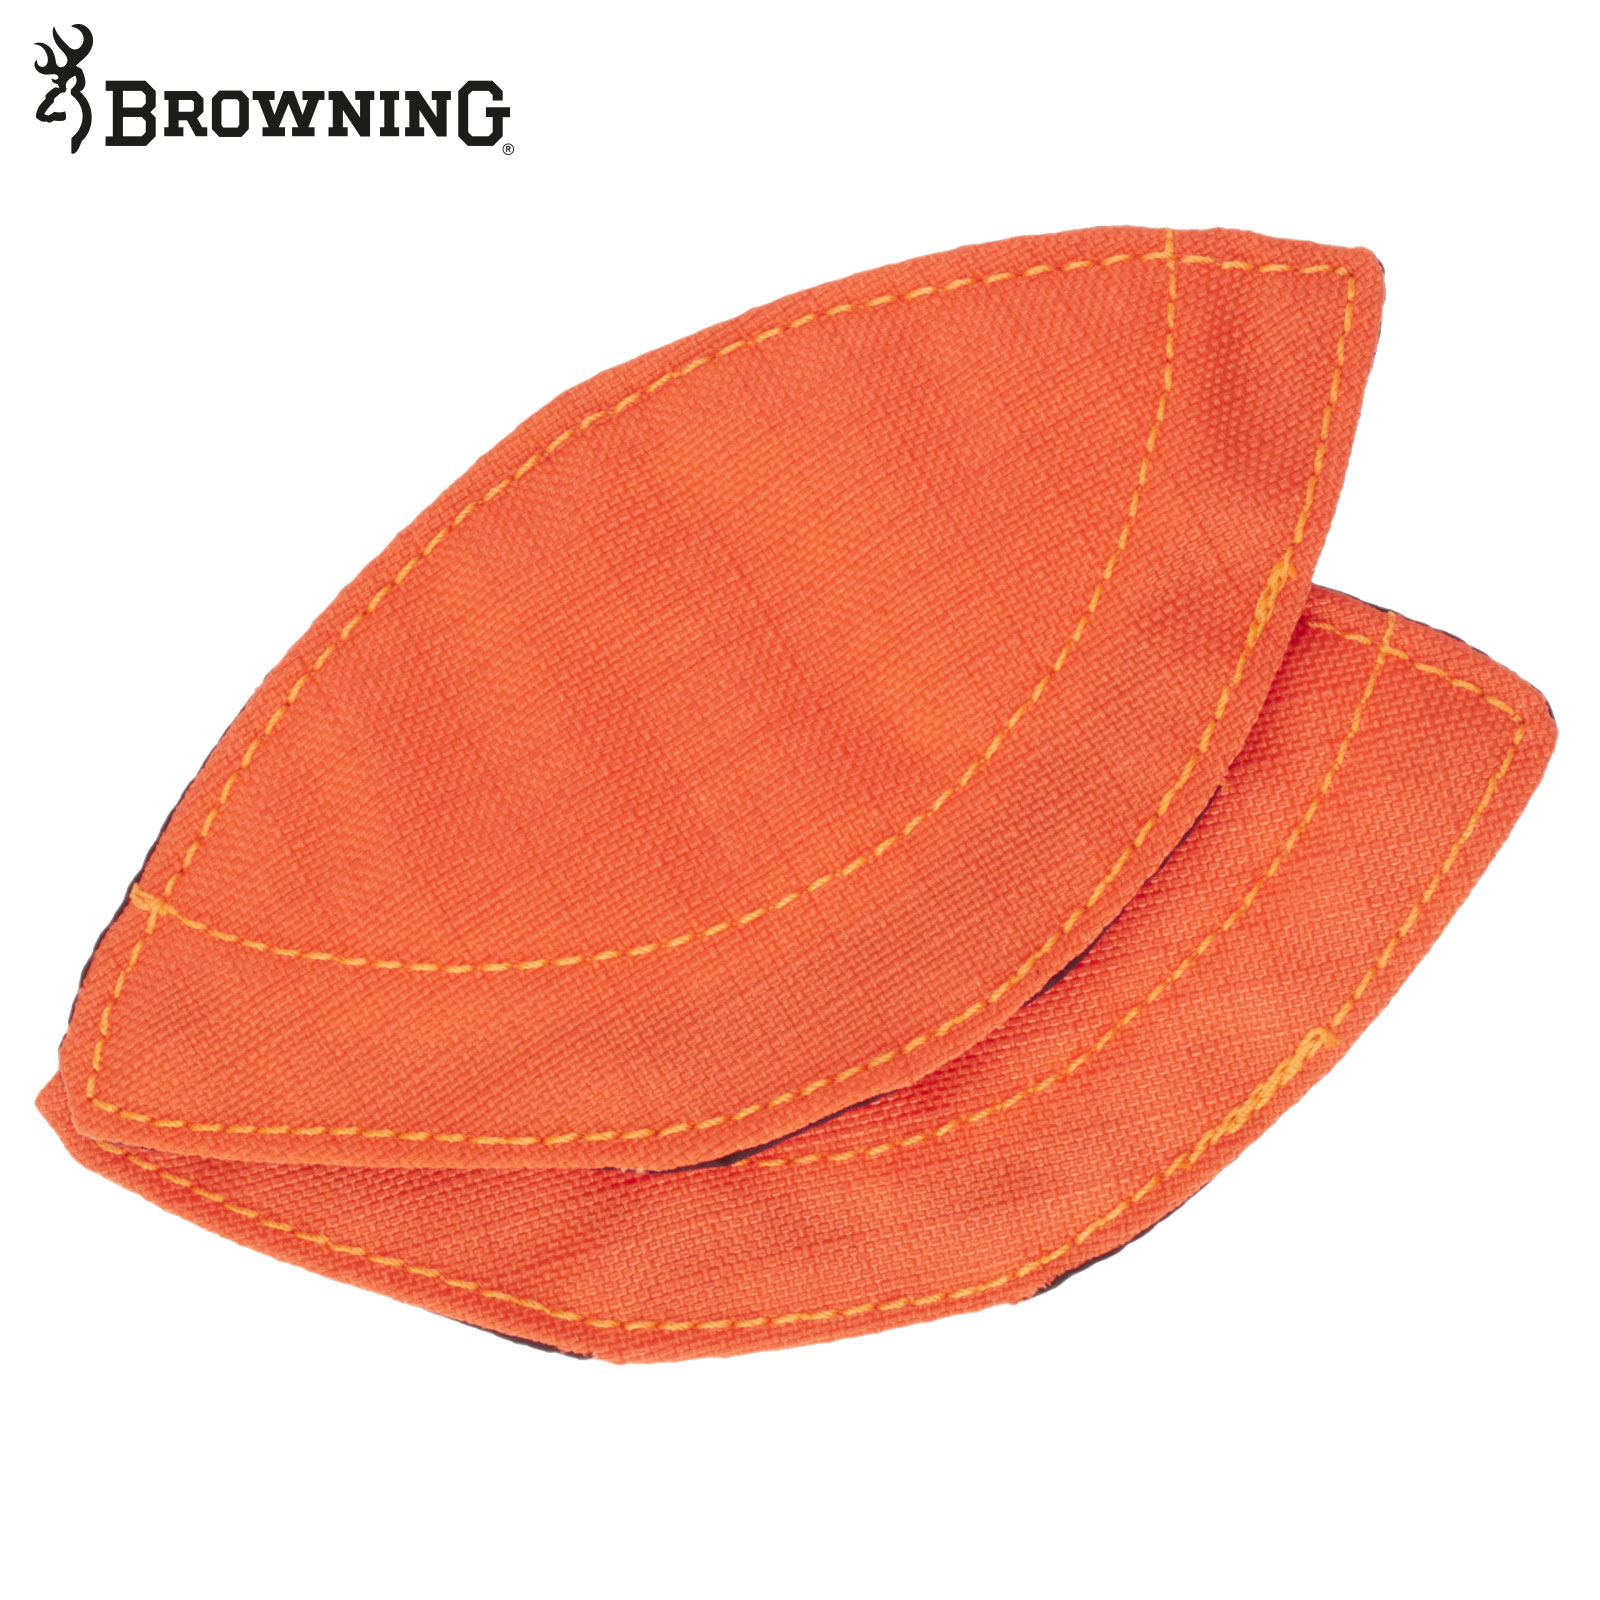 BROWNING Schulterschutz von Browning